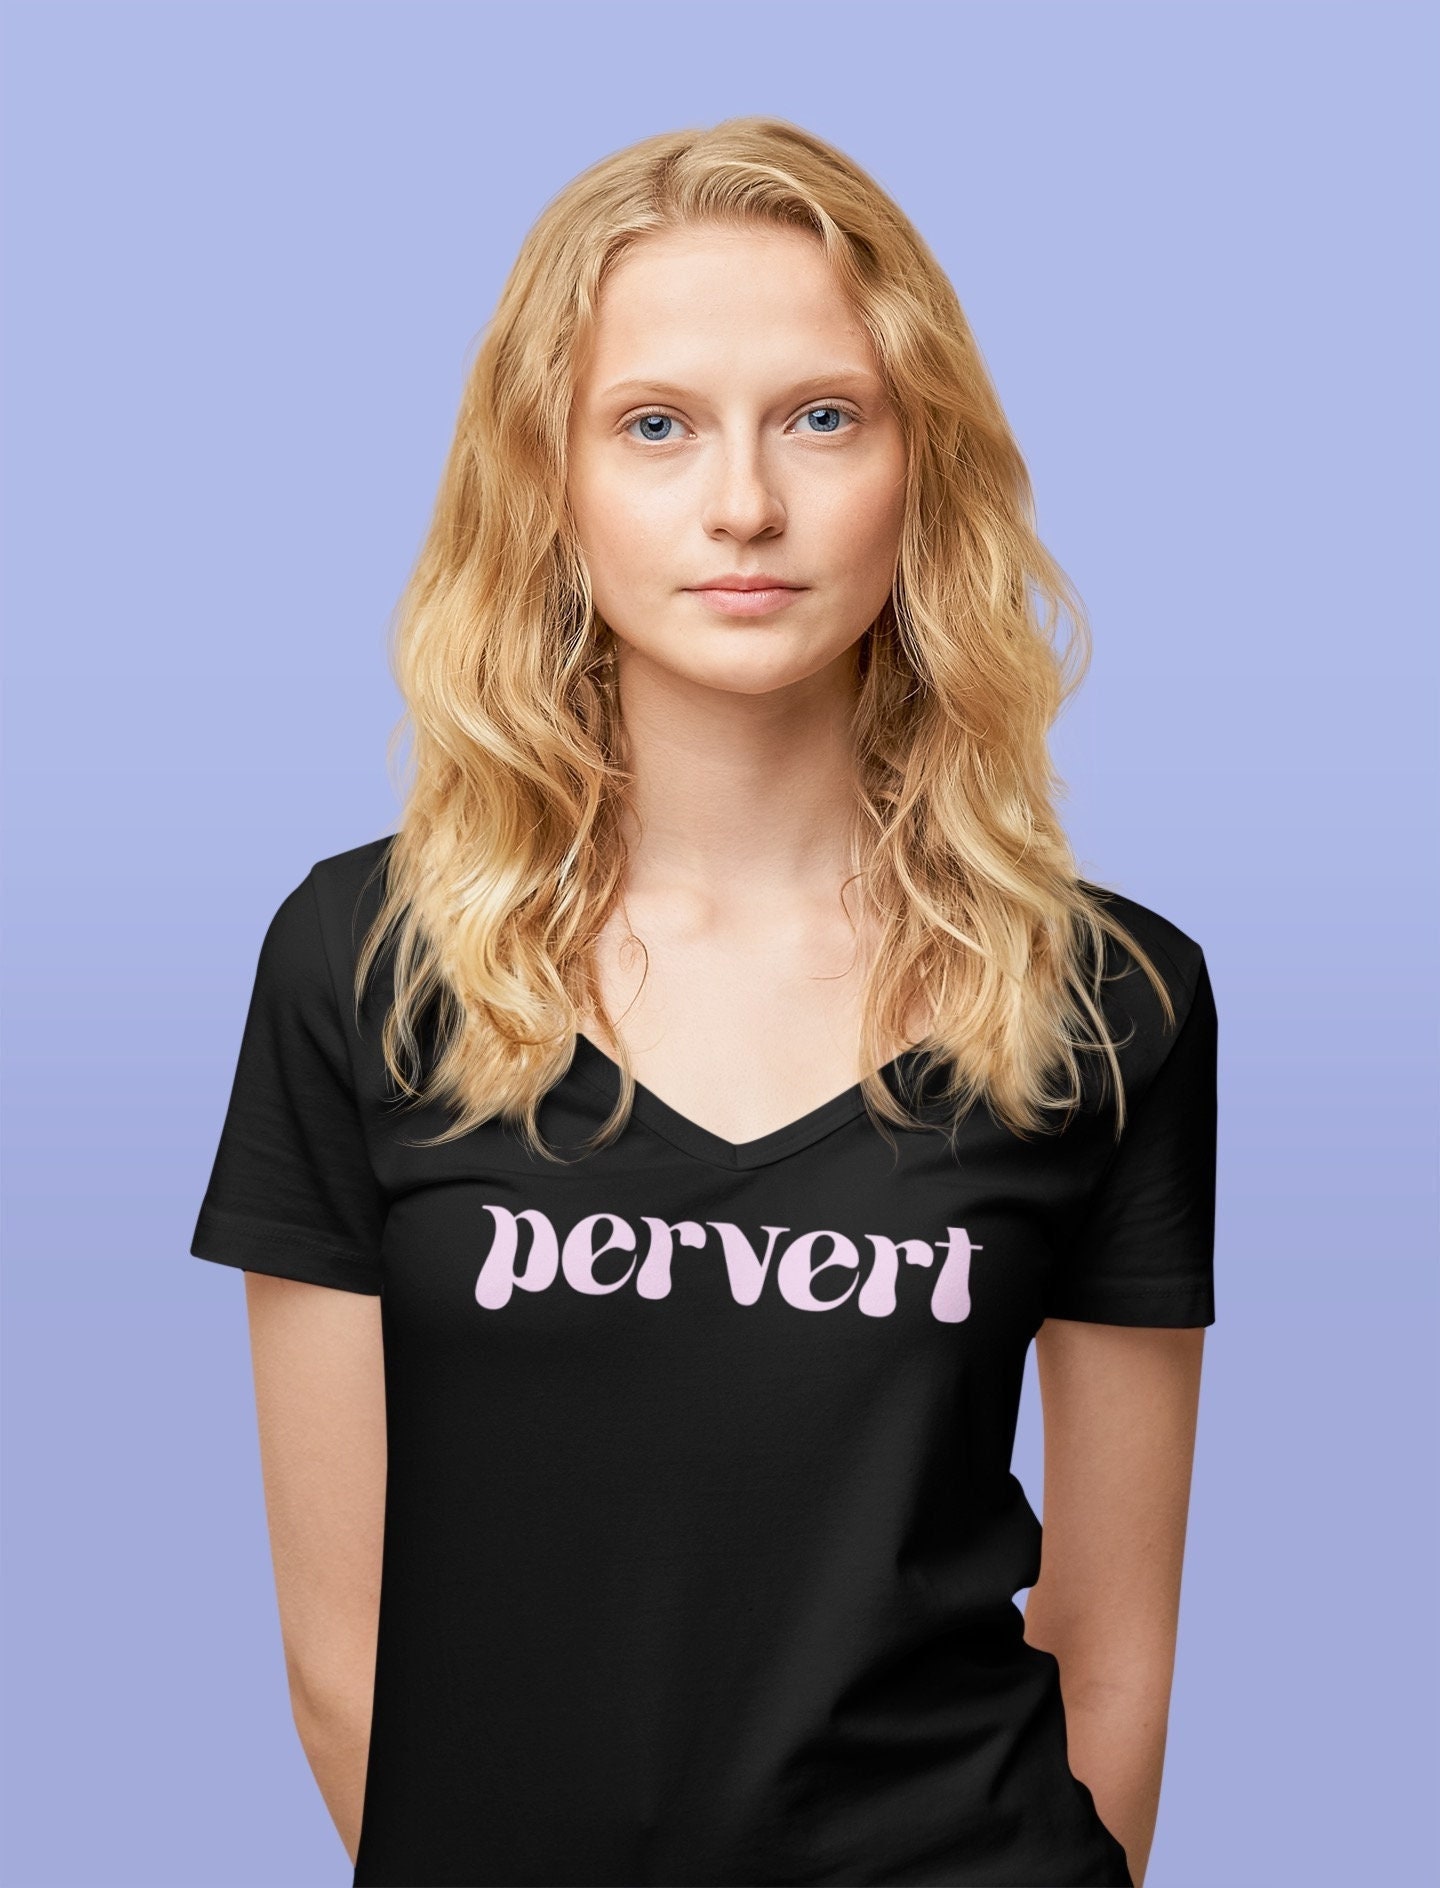 Alternativt forslag Taktil sans Stationær Pervert Womens Recycled V-neck T-shirt - Etsy